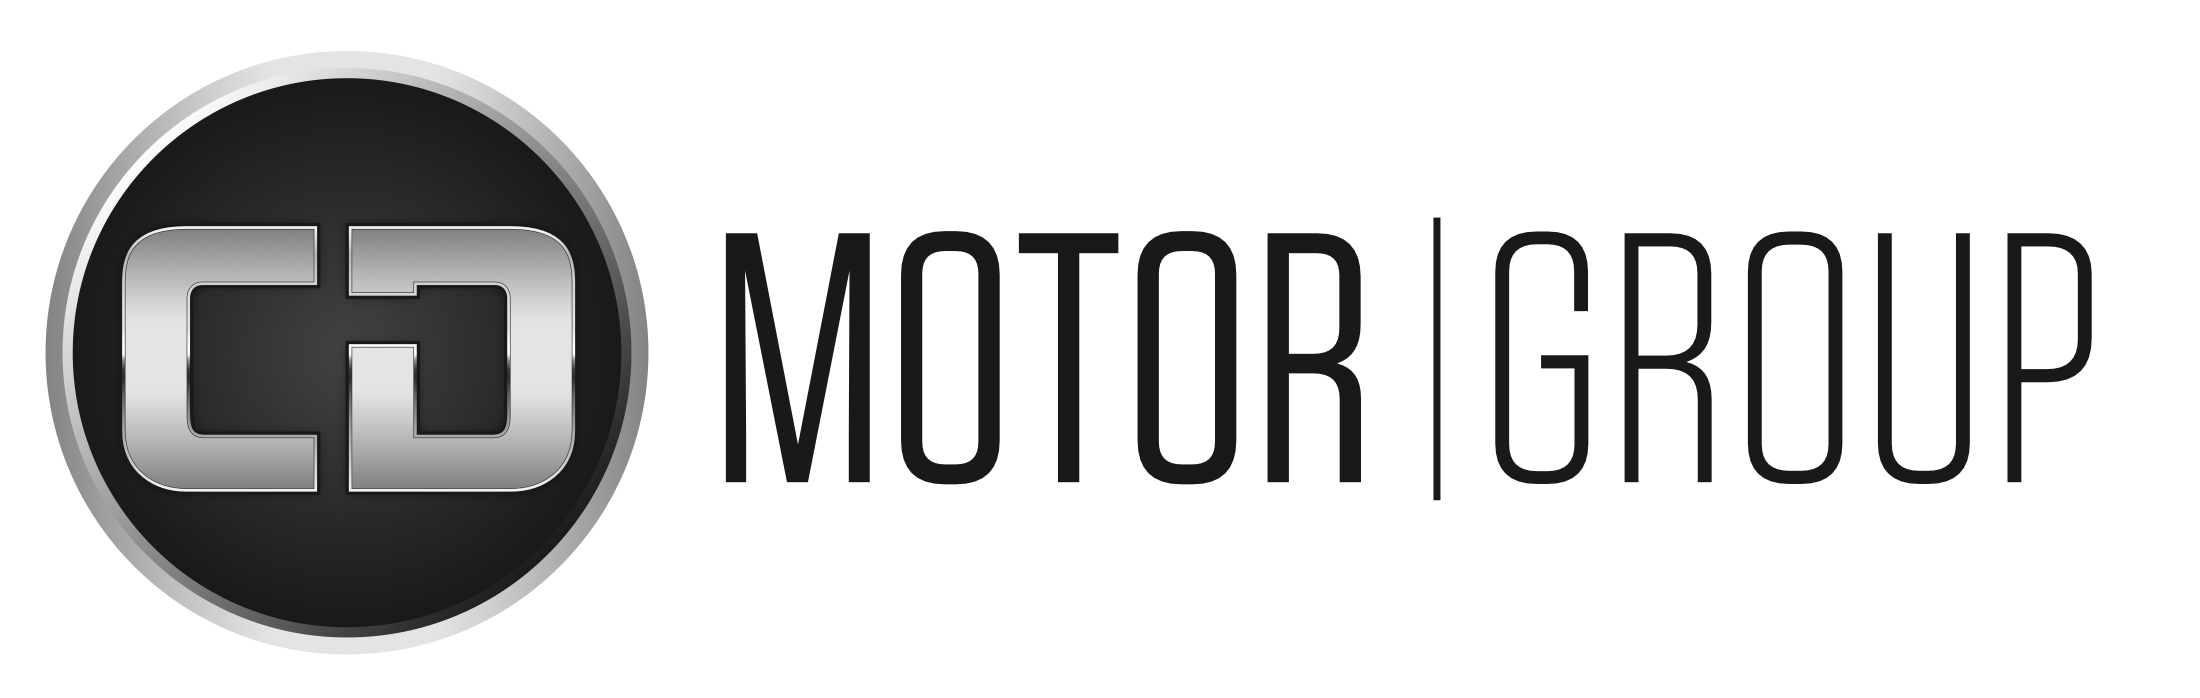 CD Motorgroup Logo